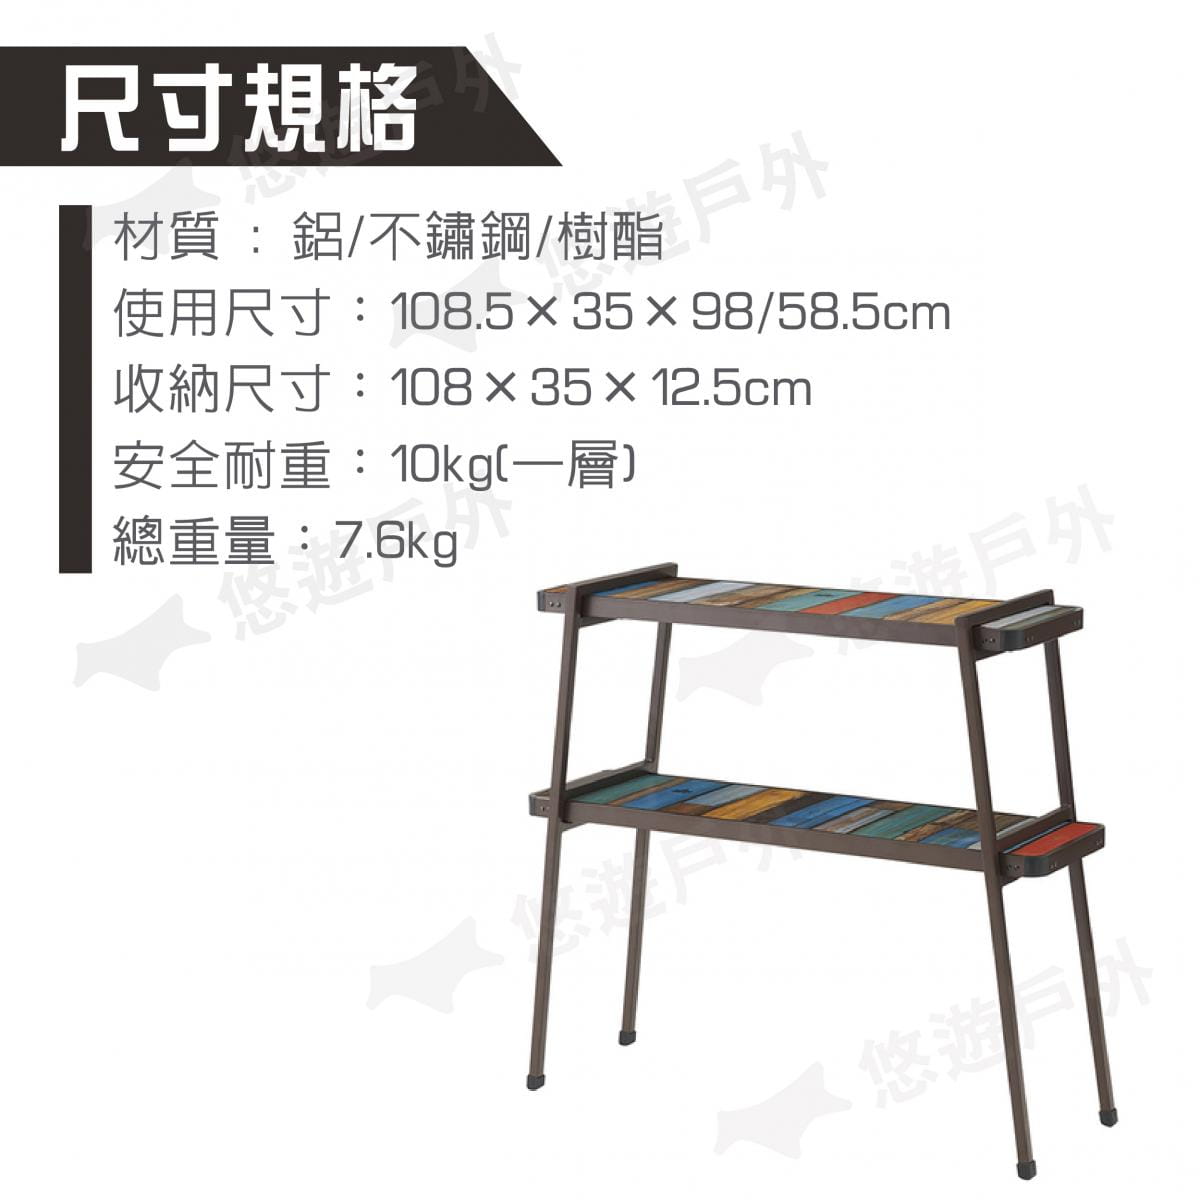 【日本LOGOS】G/B野營雙層收納桌 Gran Basic床款板架 LG73200035 4